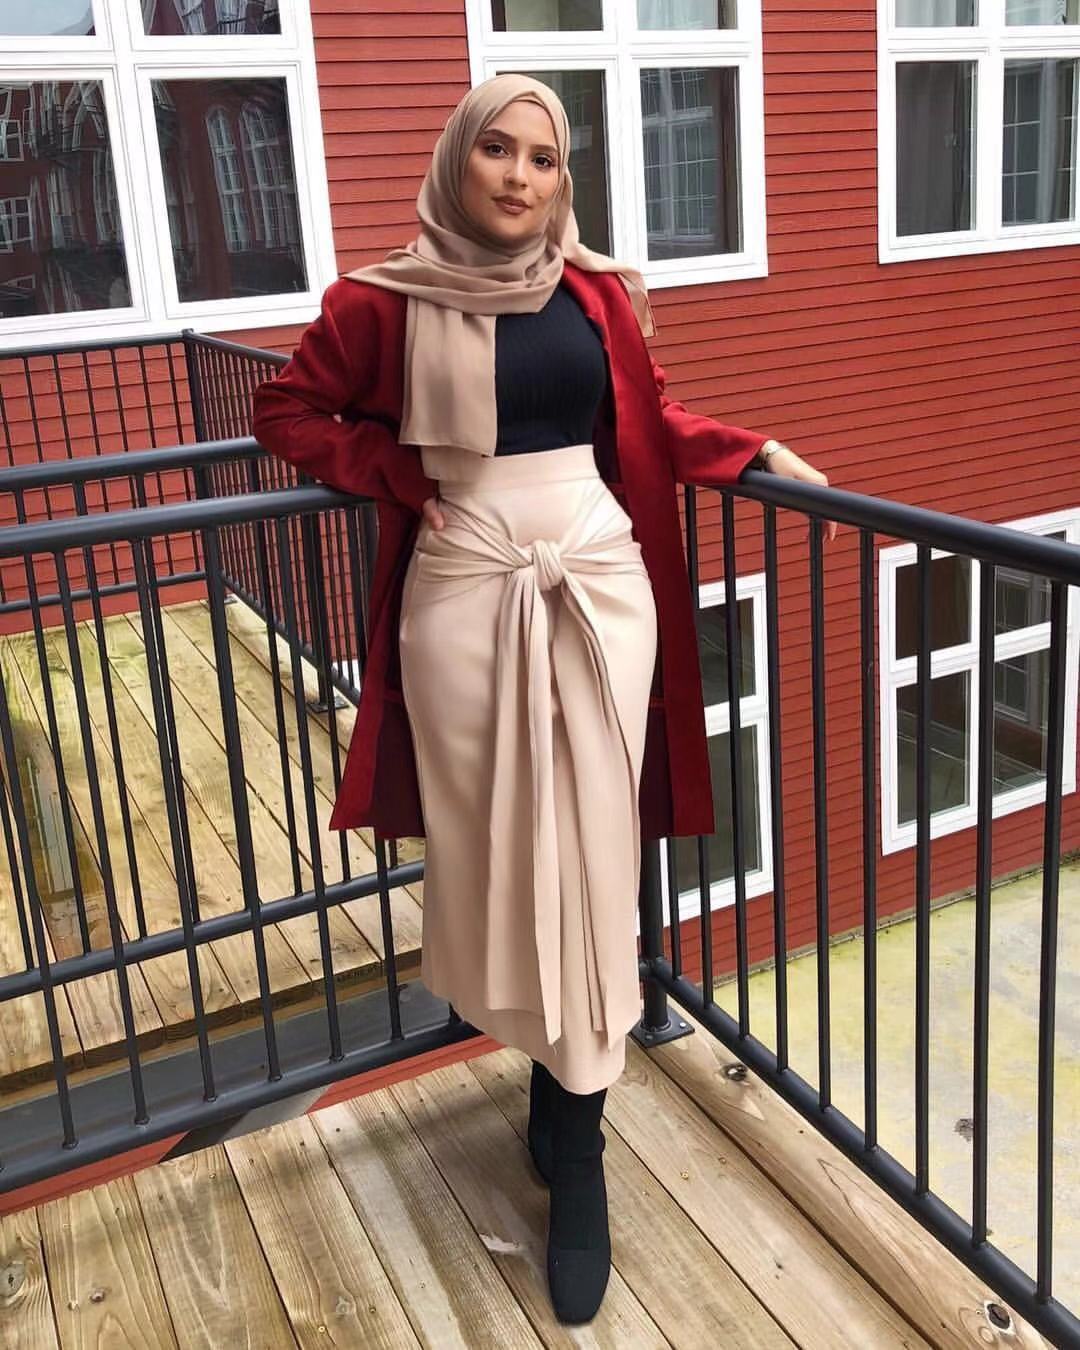 2019 best selling sexy girl skirt muslim women long maxi skirt